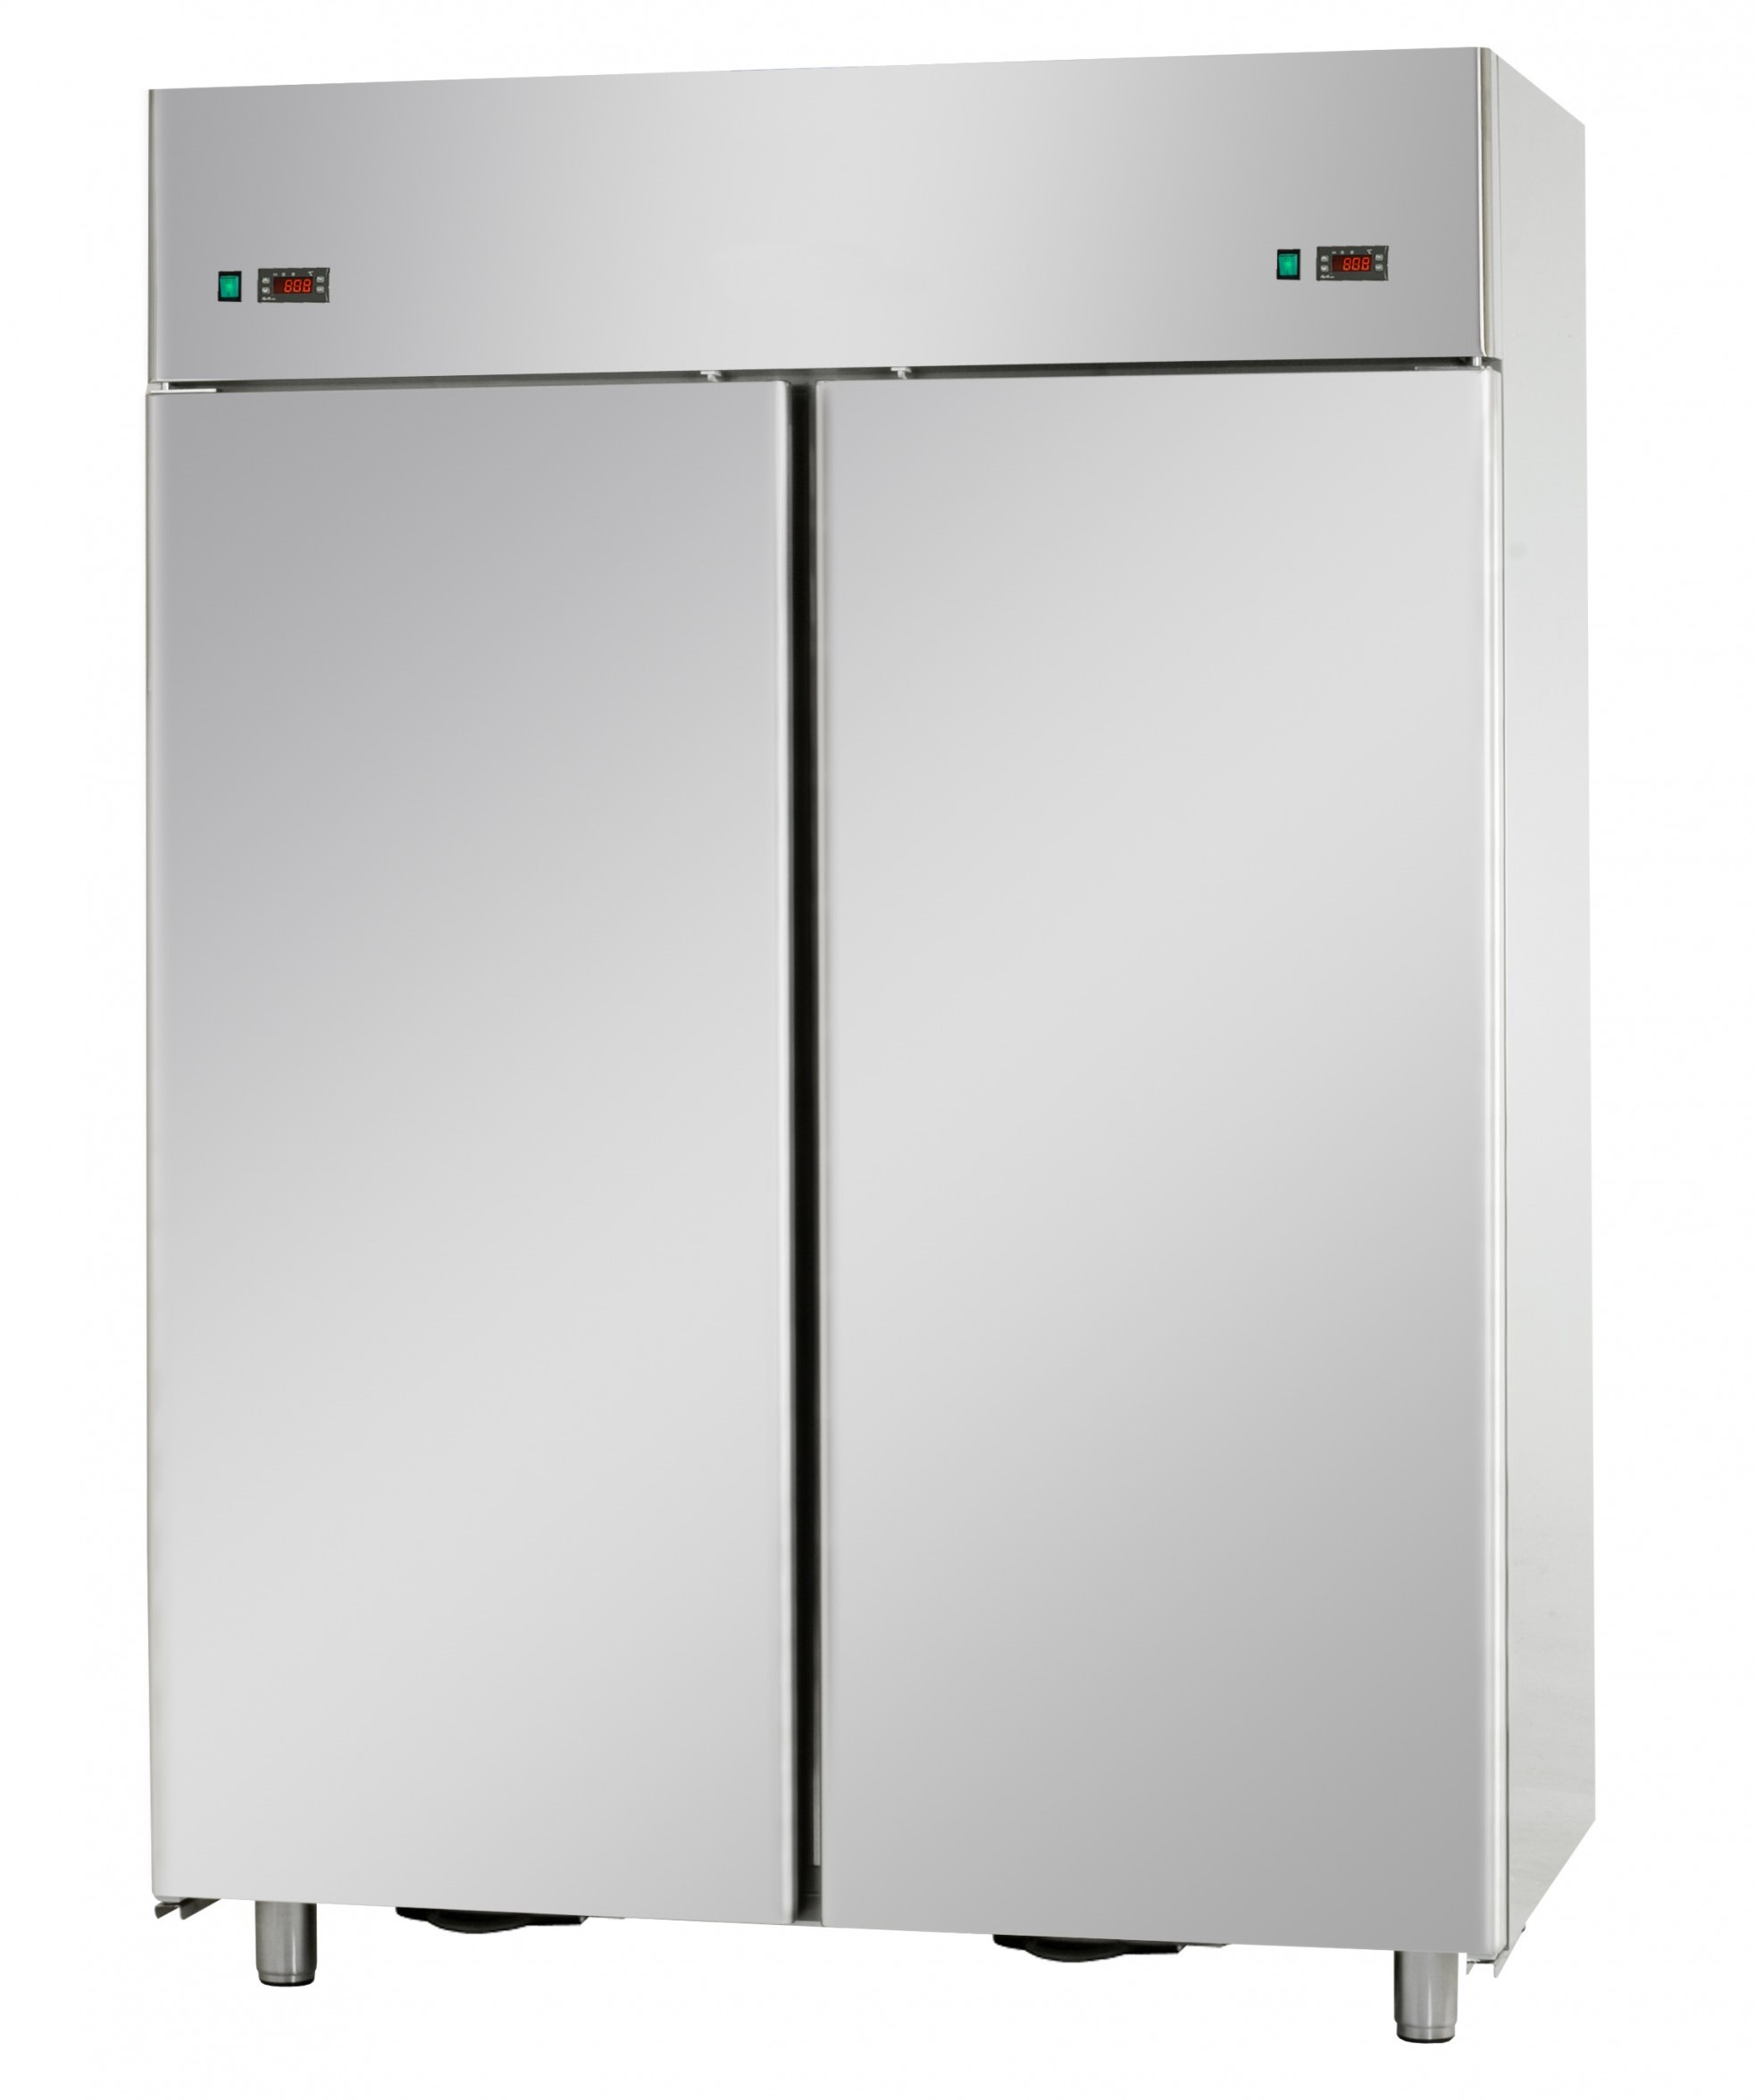 Шкаф холодильный 1 дверь. Шкаф Полаир DB 114s. Шкаф холодильный низкотемпературный cb114-s (ШН-1,4). Шкаф холодильный 1600х725х1980 (глухие двери) э1ф 220 n-1.0 КВТ. Шкаф холодильный низкотемпературный cb114-s.